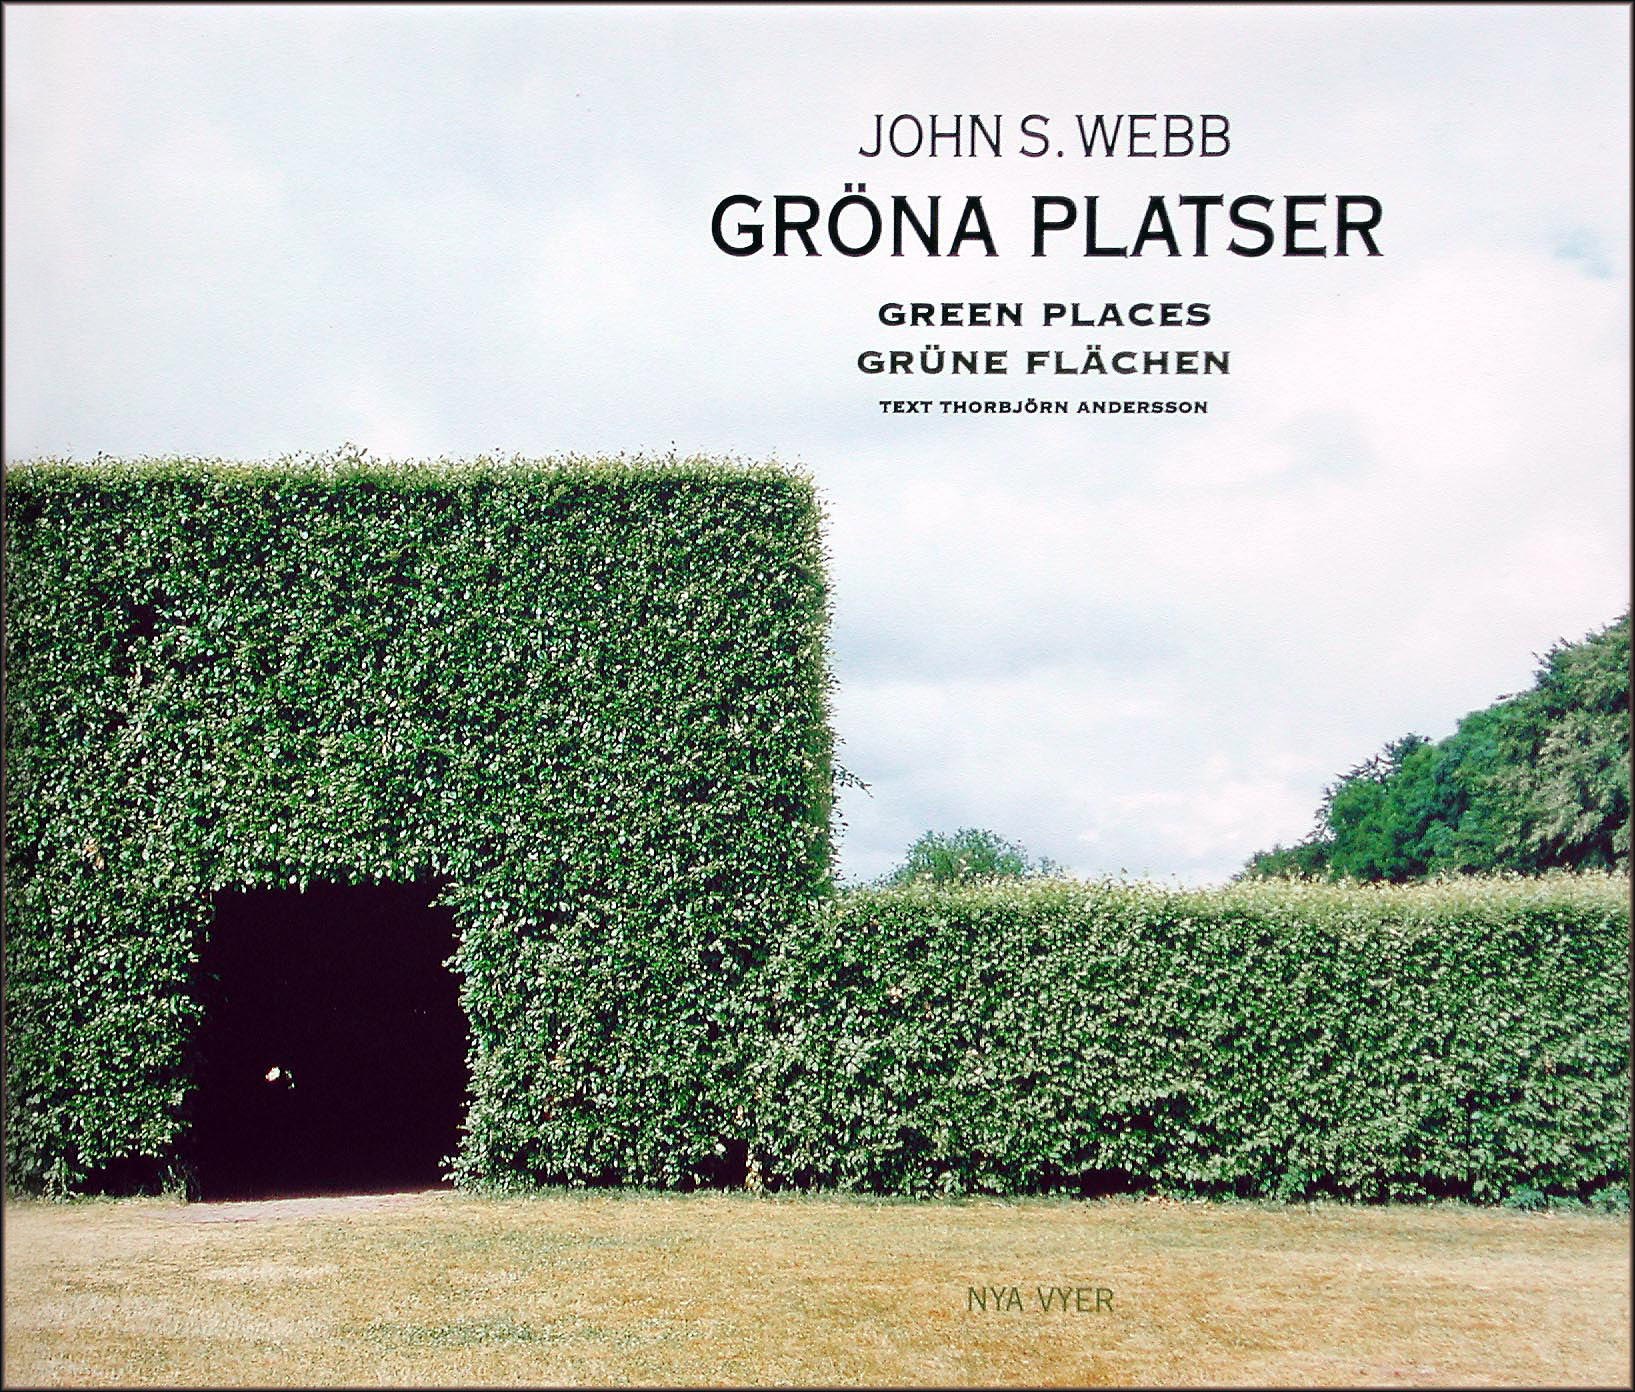 John S. Webb photobook Green Places